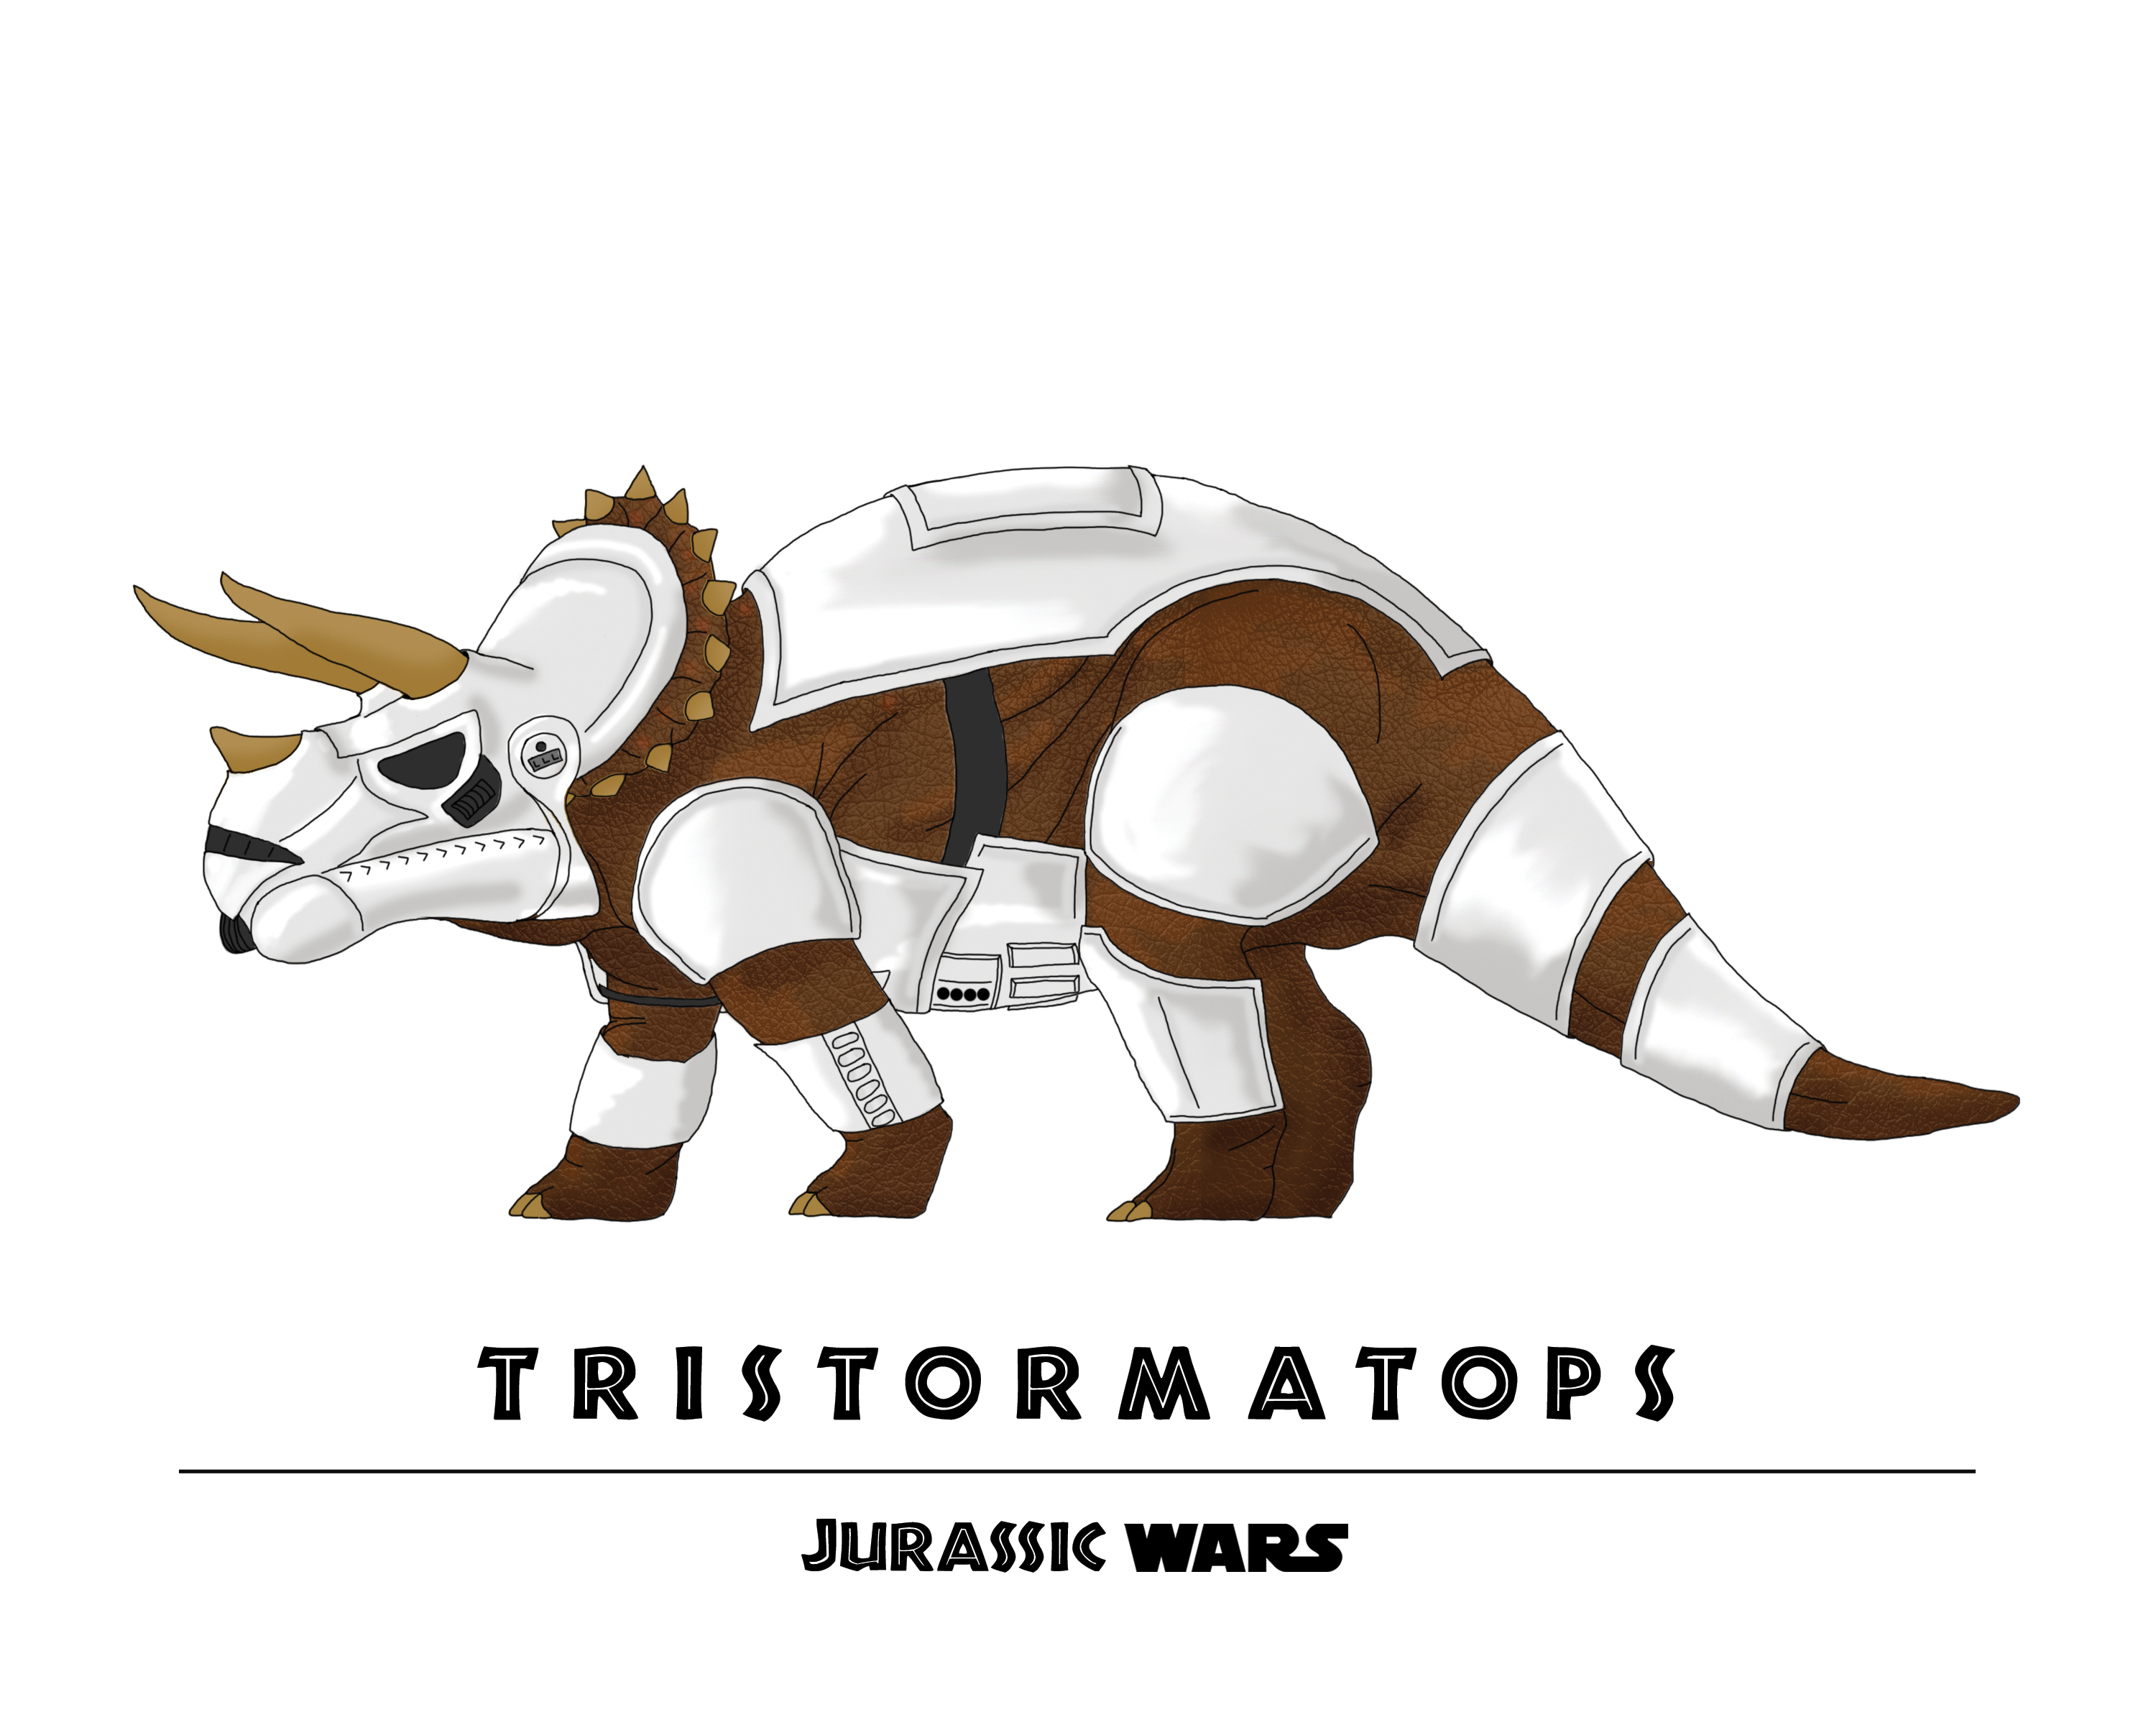 Jurassic-Wars-Tristormatops.jpg